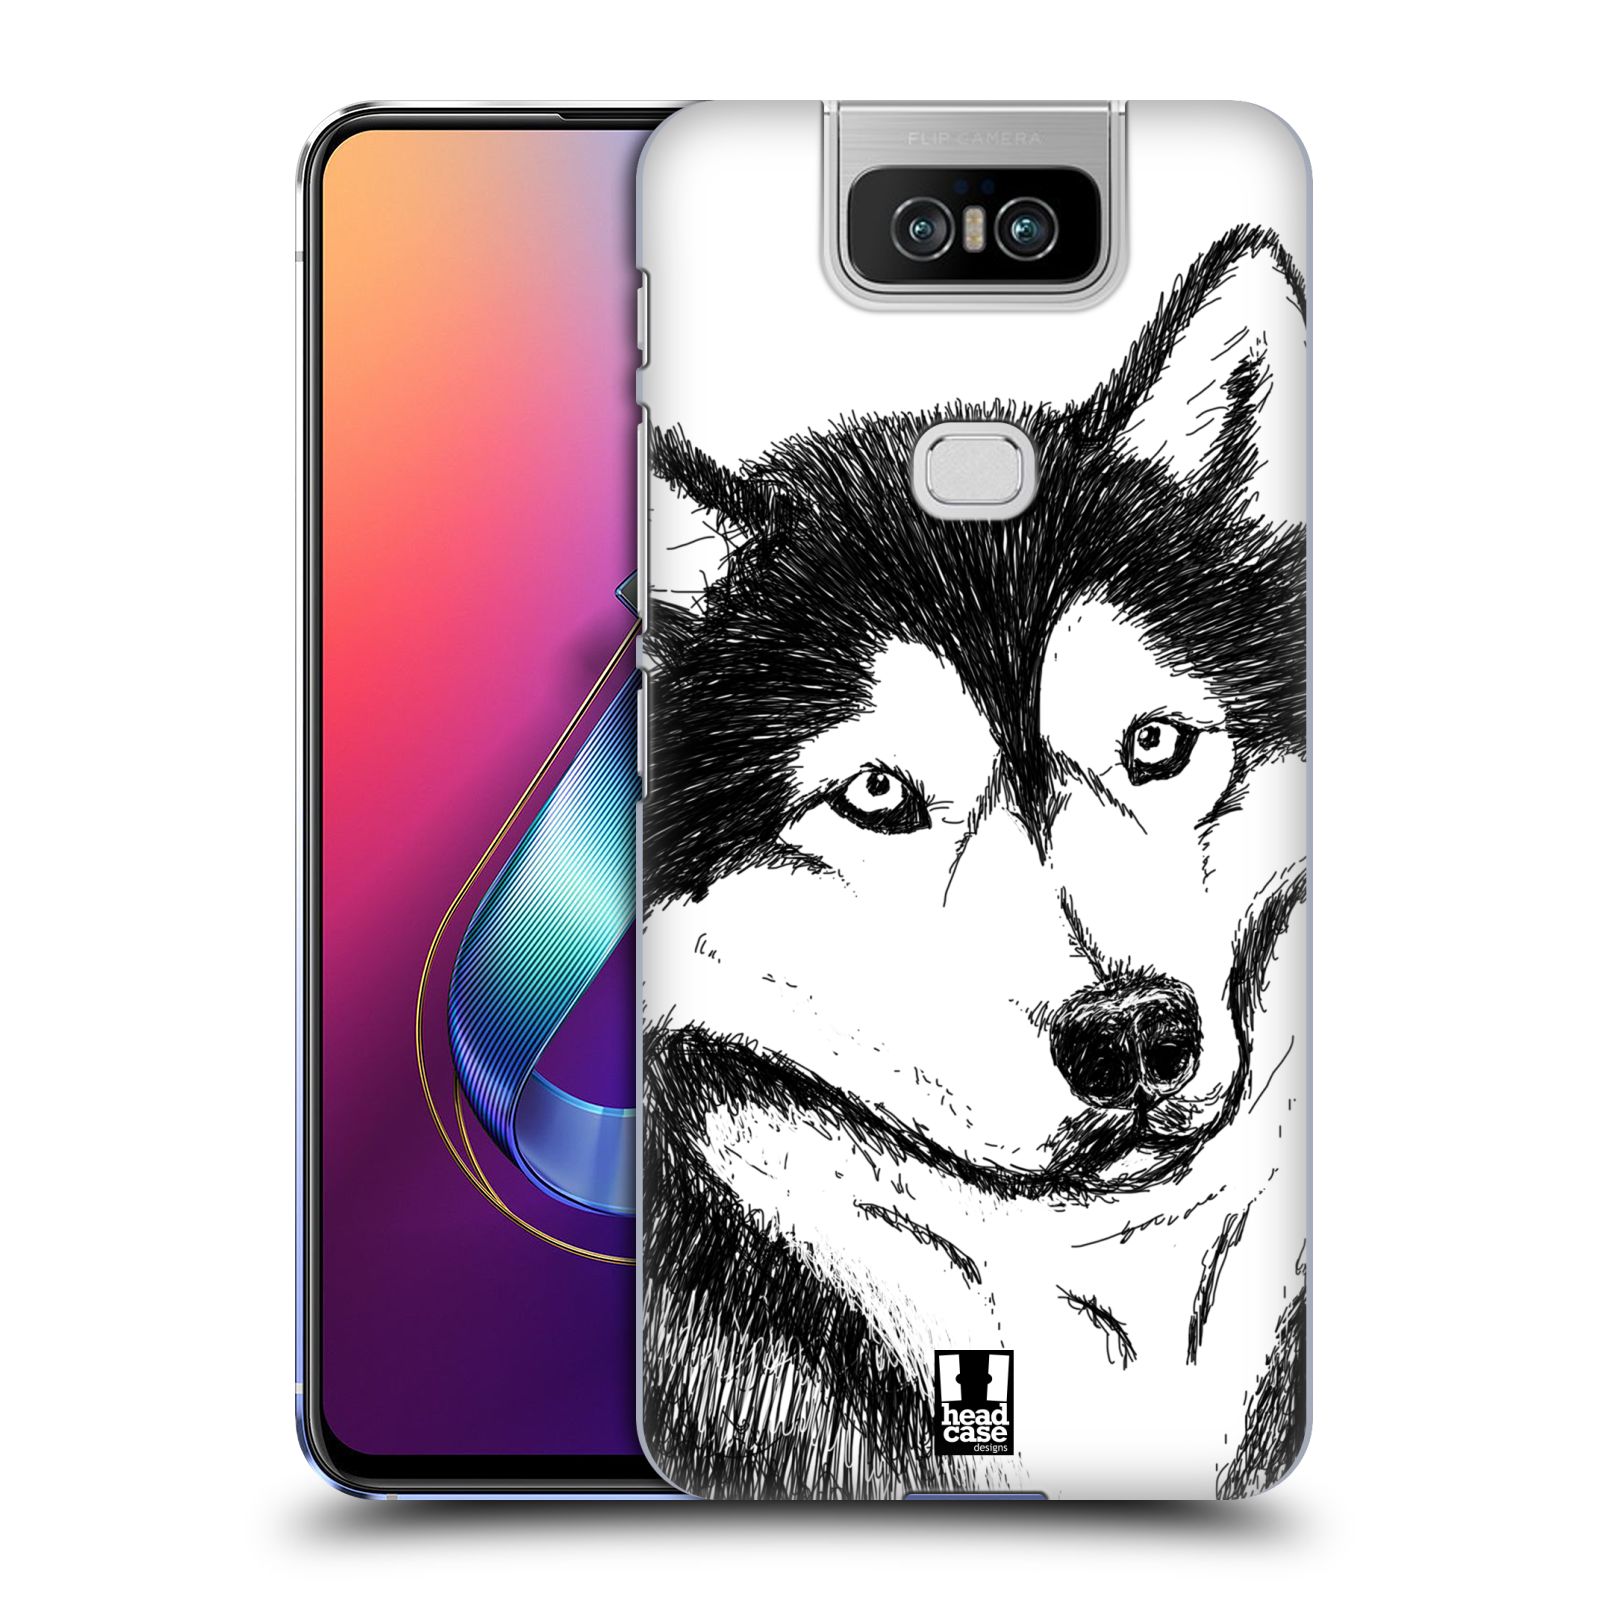 Pouzdro na mobil Asus Zenfone 6 ZS630KL - HEAD CASE - vzor Kreslená zvířátka černá a bílá pes husky